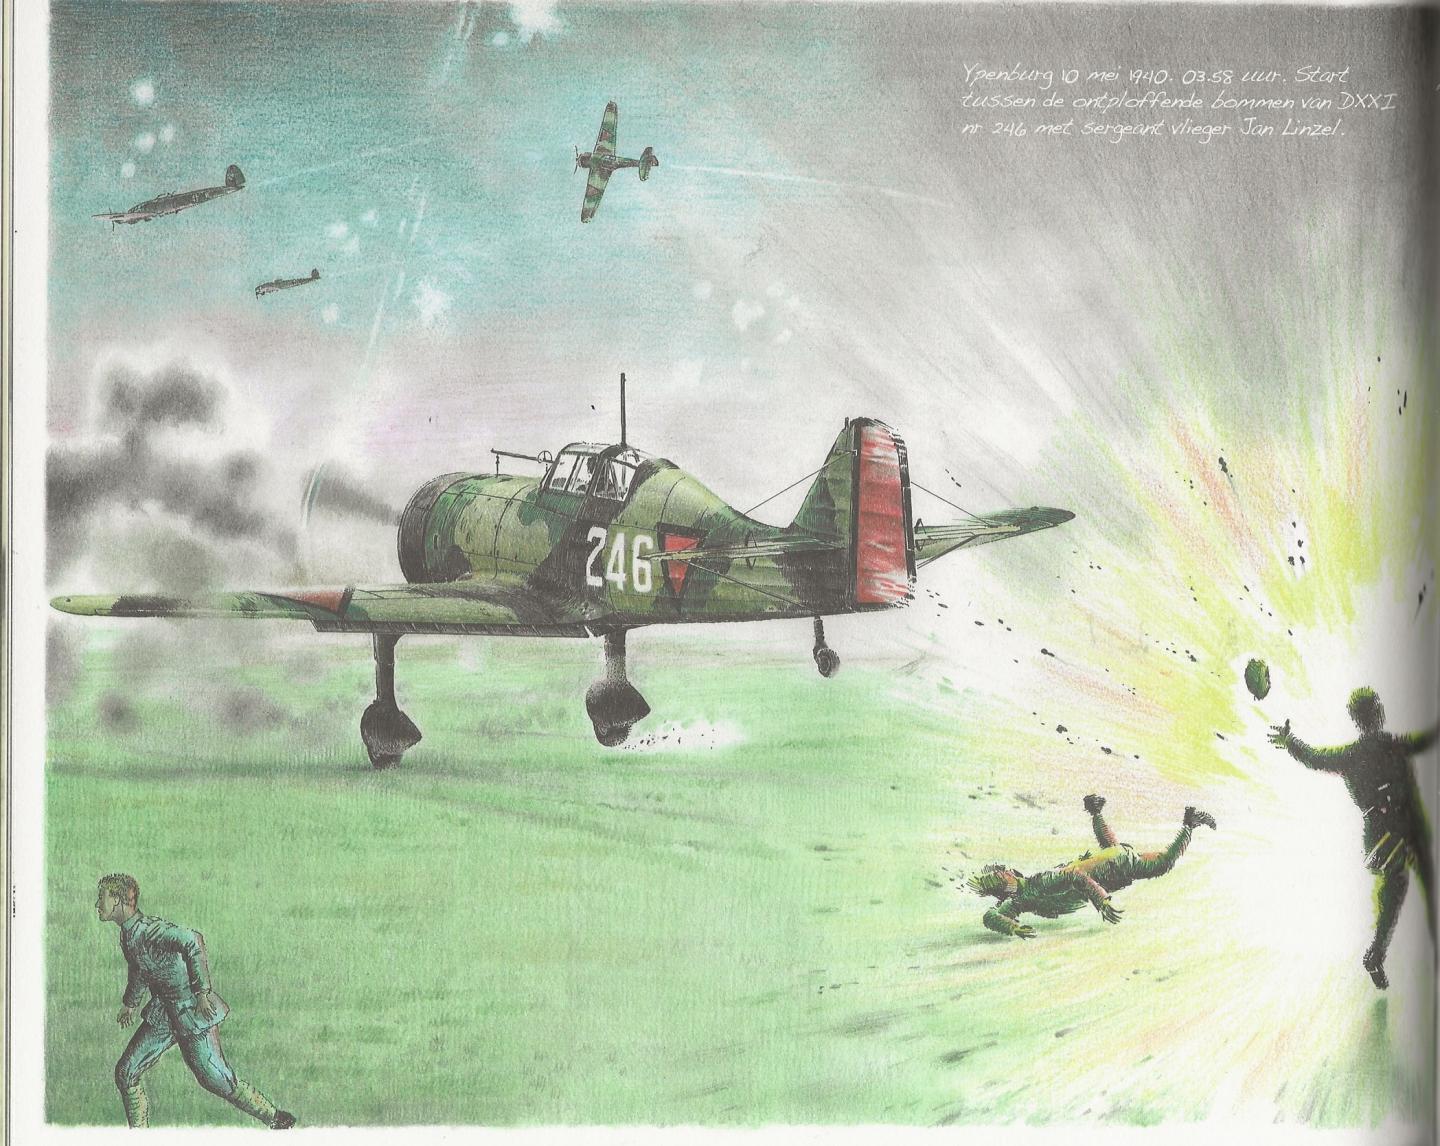 Vos, Hans ... [et al.] - Onze vliegers in mei 1940. Beschrijving van de militaire strijd in het Nederlandse luchtruim in mei 1940 aangevuld met interviews met nog levende piloten uit die tijd